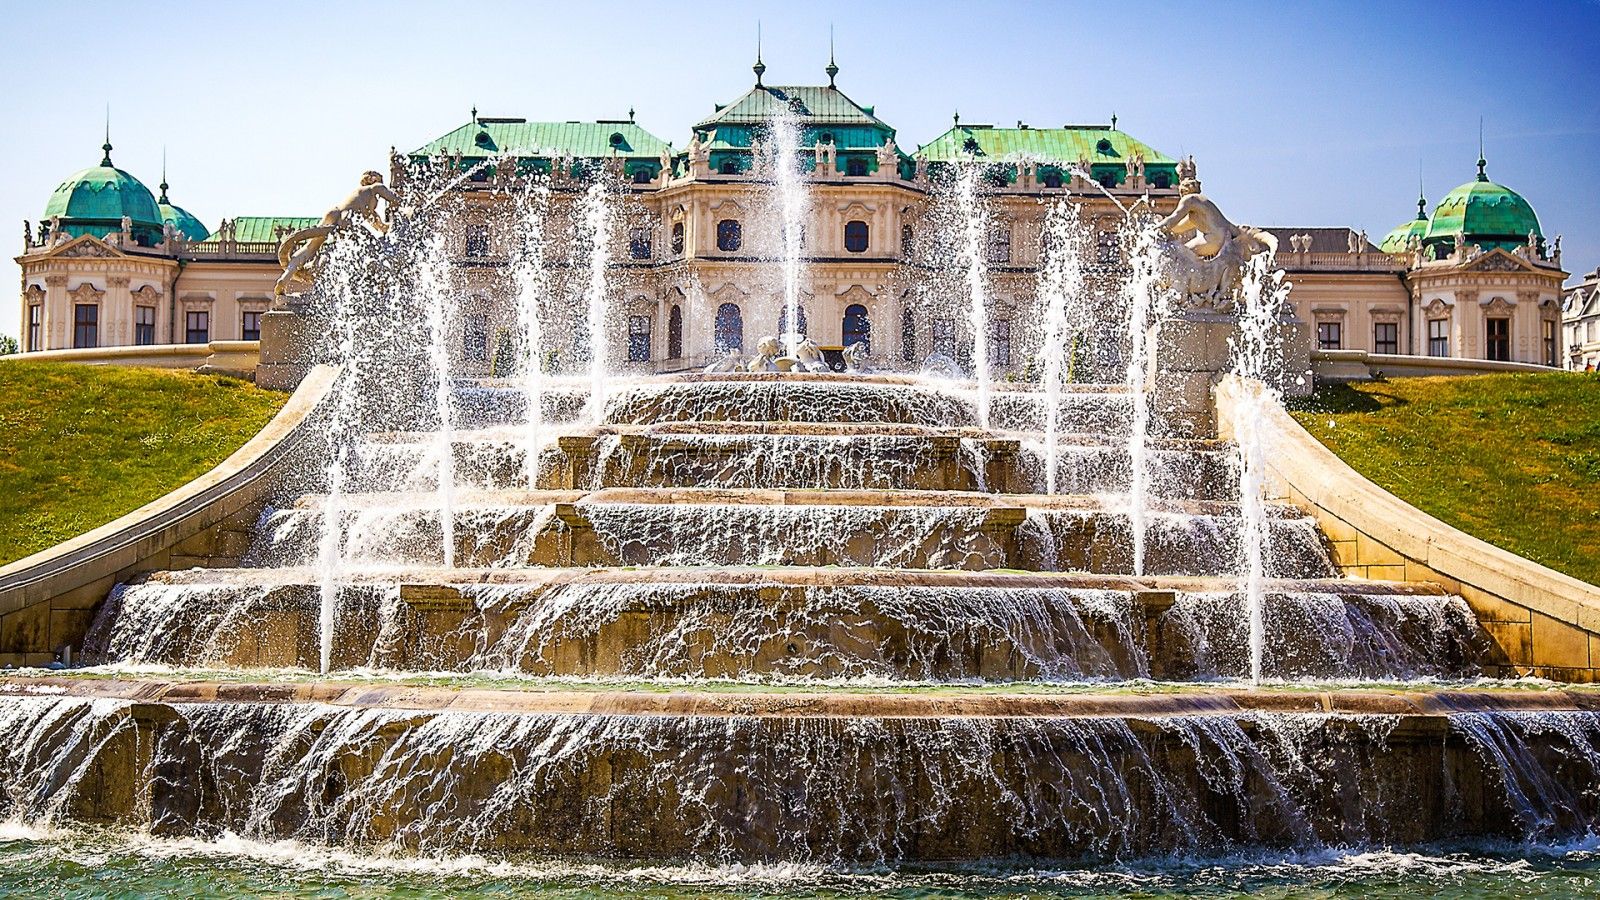 Belvedere Palace Gardens in Vienna